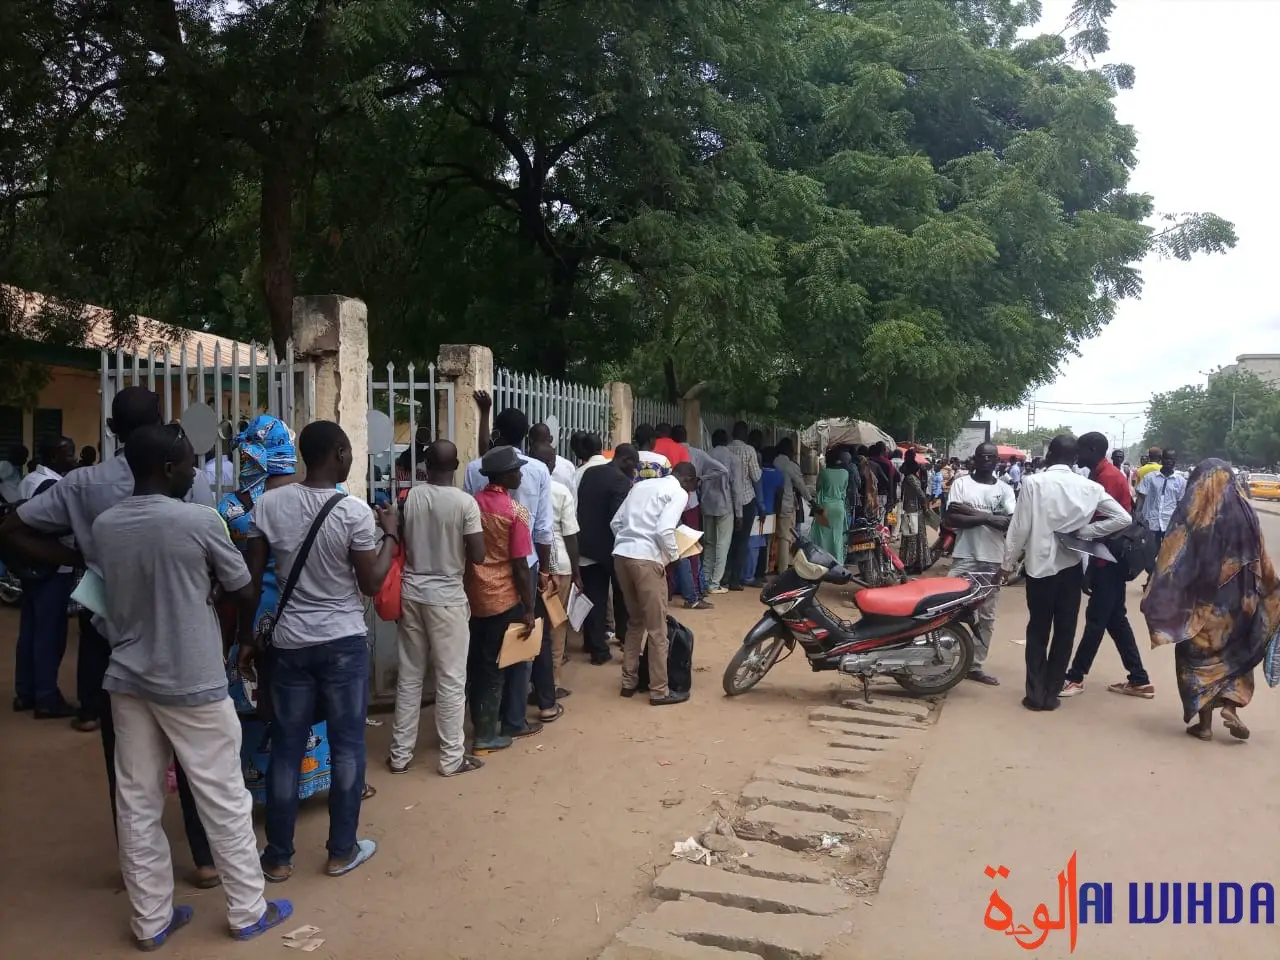 Tchad : des diplômés sans emploi envisagent de quitter le pays